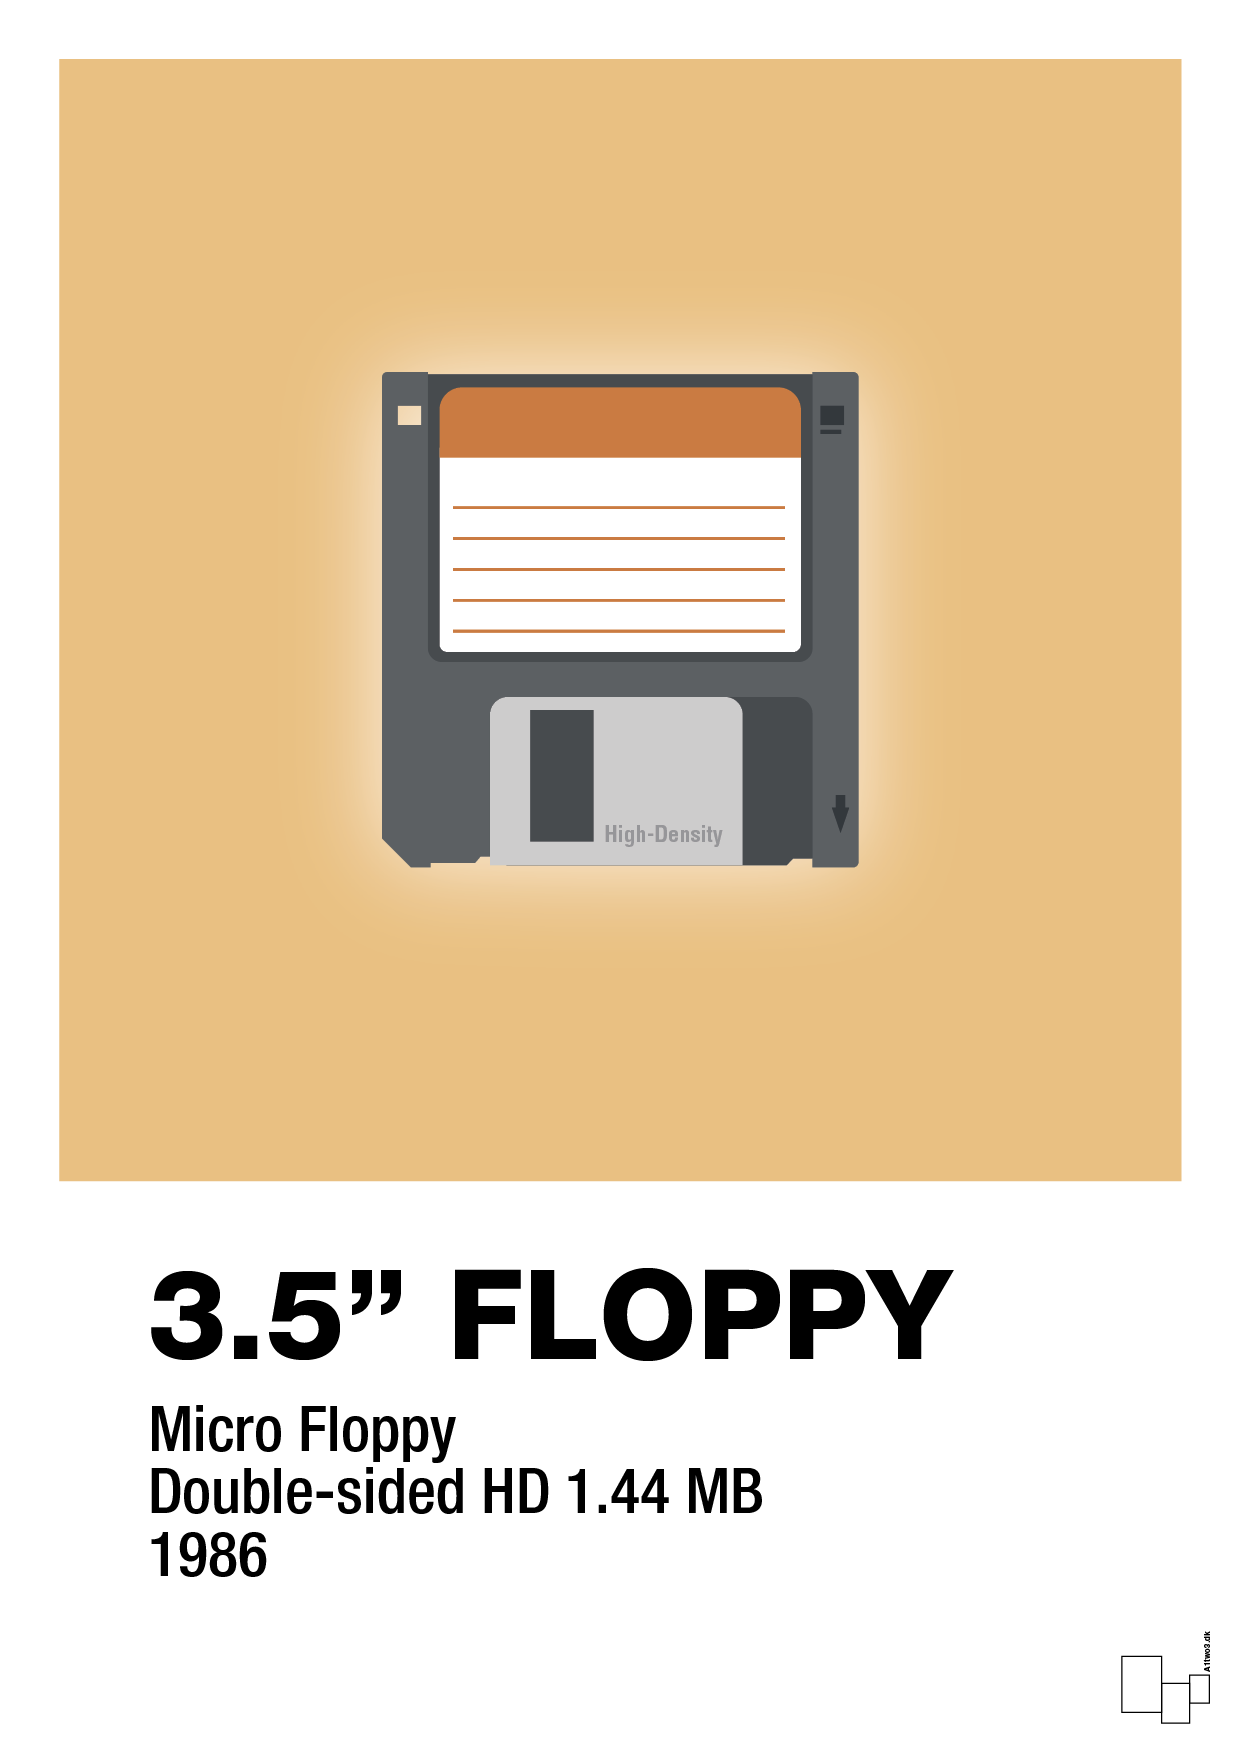 floppy disc 3.5" - Plakat med Grafik i Charismatic